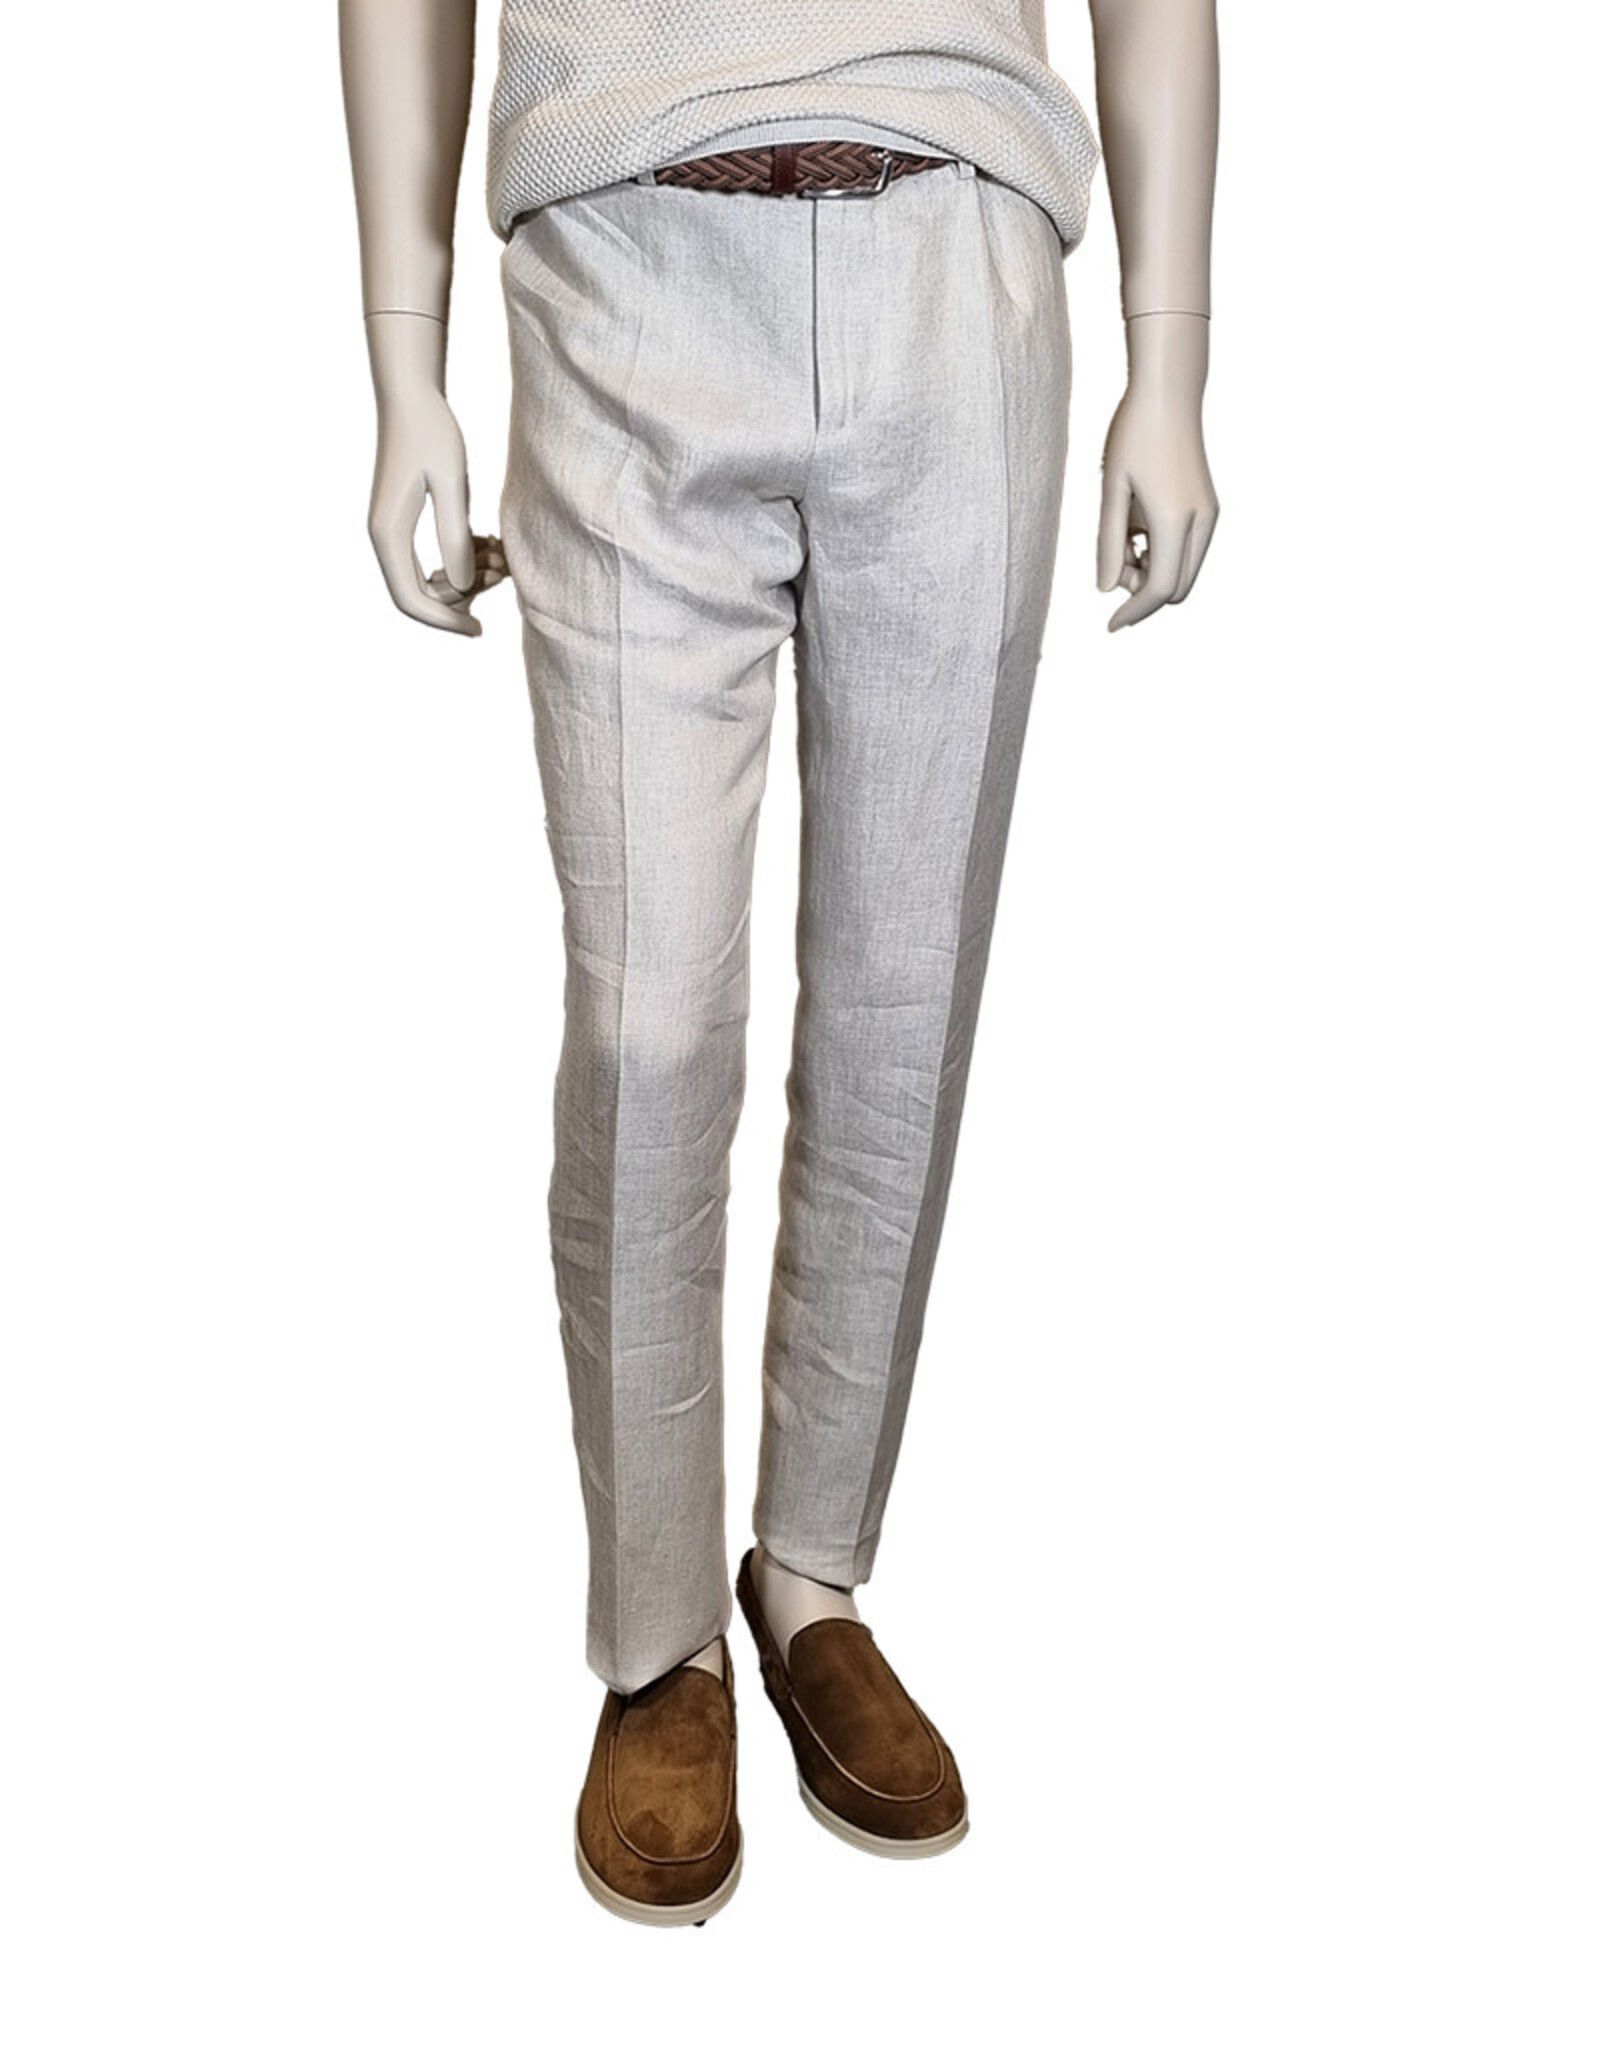 Tombolini Tombolini trousers linen off white Zero Gravity EAFE/U140 M:PSL9